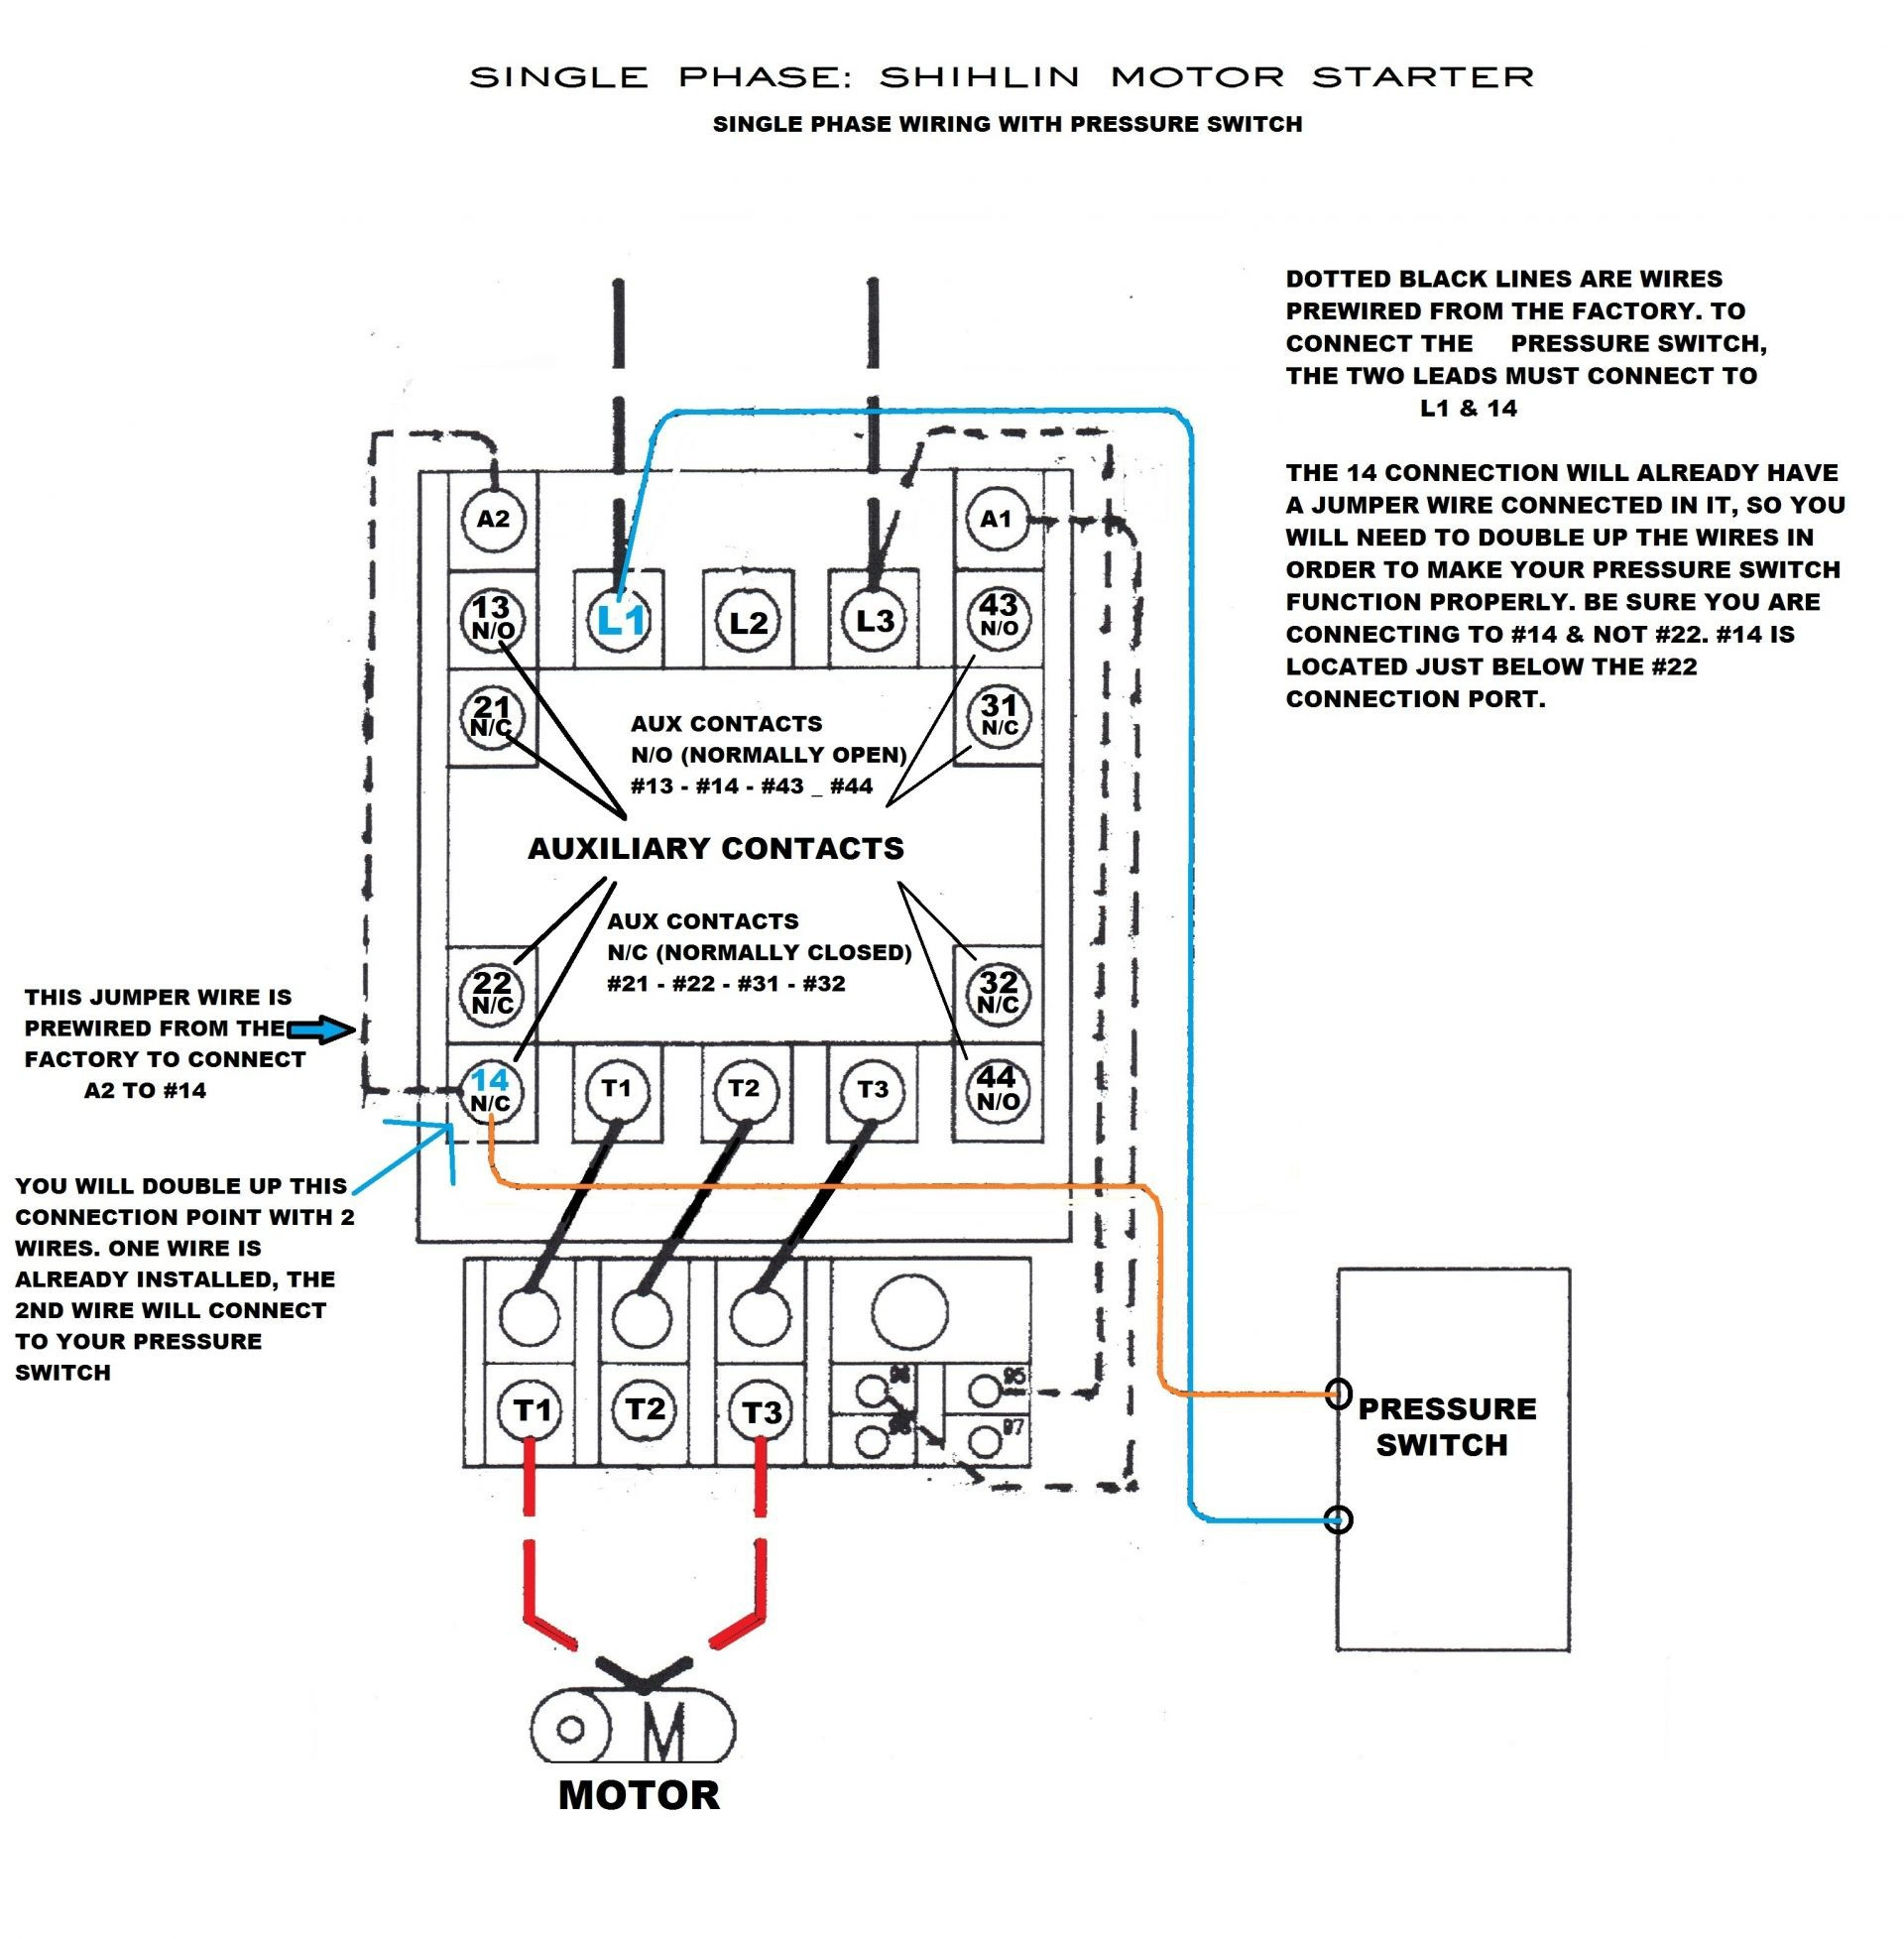 Motor Starter Wiring - Wiring Diagram Data - Motor Starter Wiring Diagram